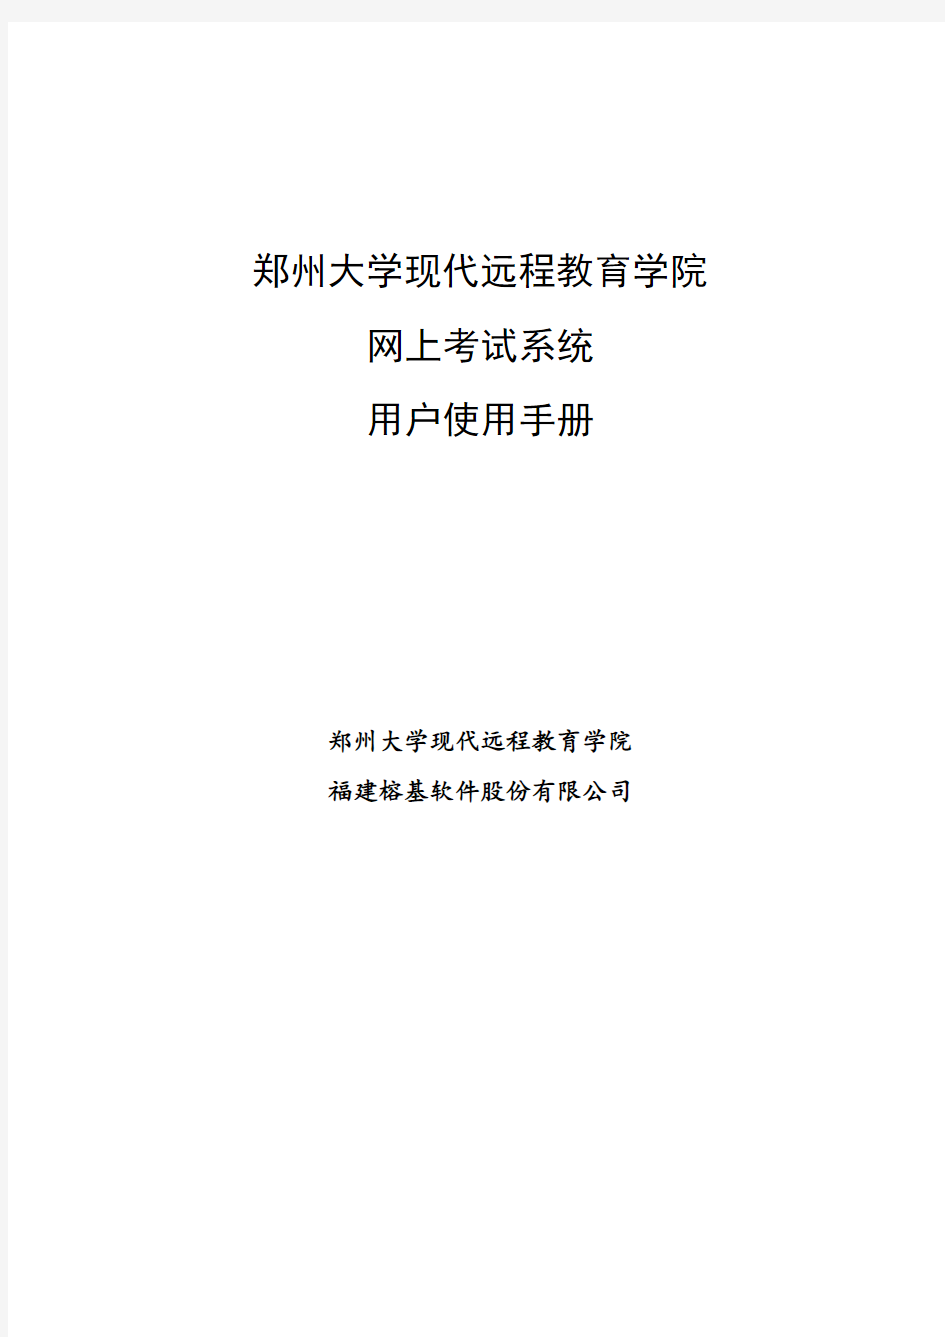 郑州大学现代远程教育学院-网上考试系统-用户使用手册